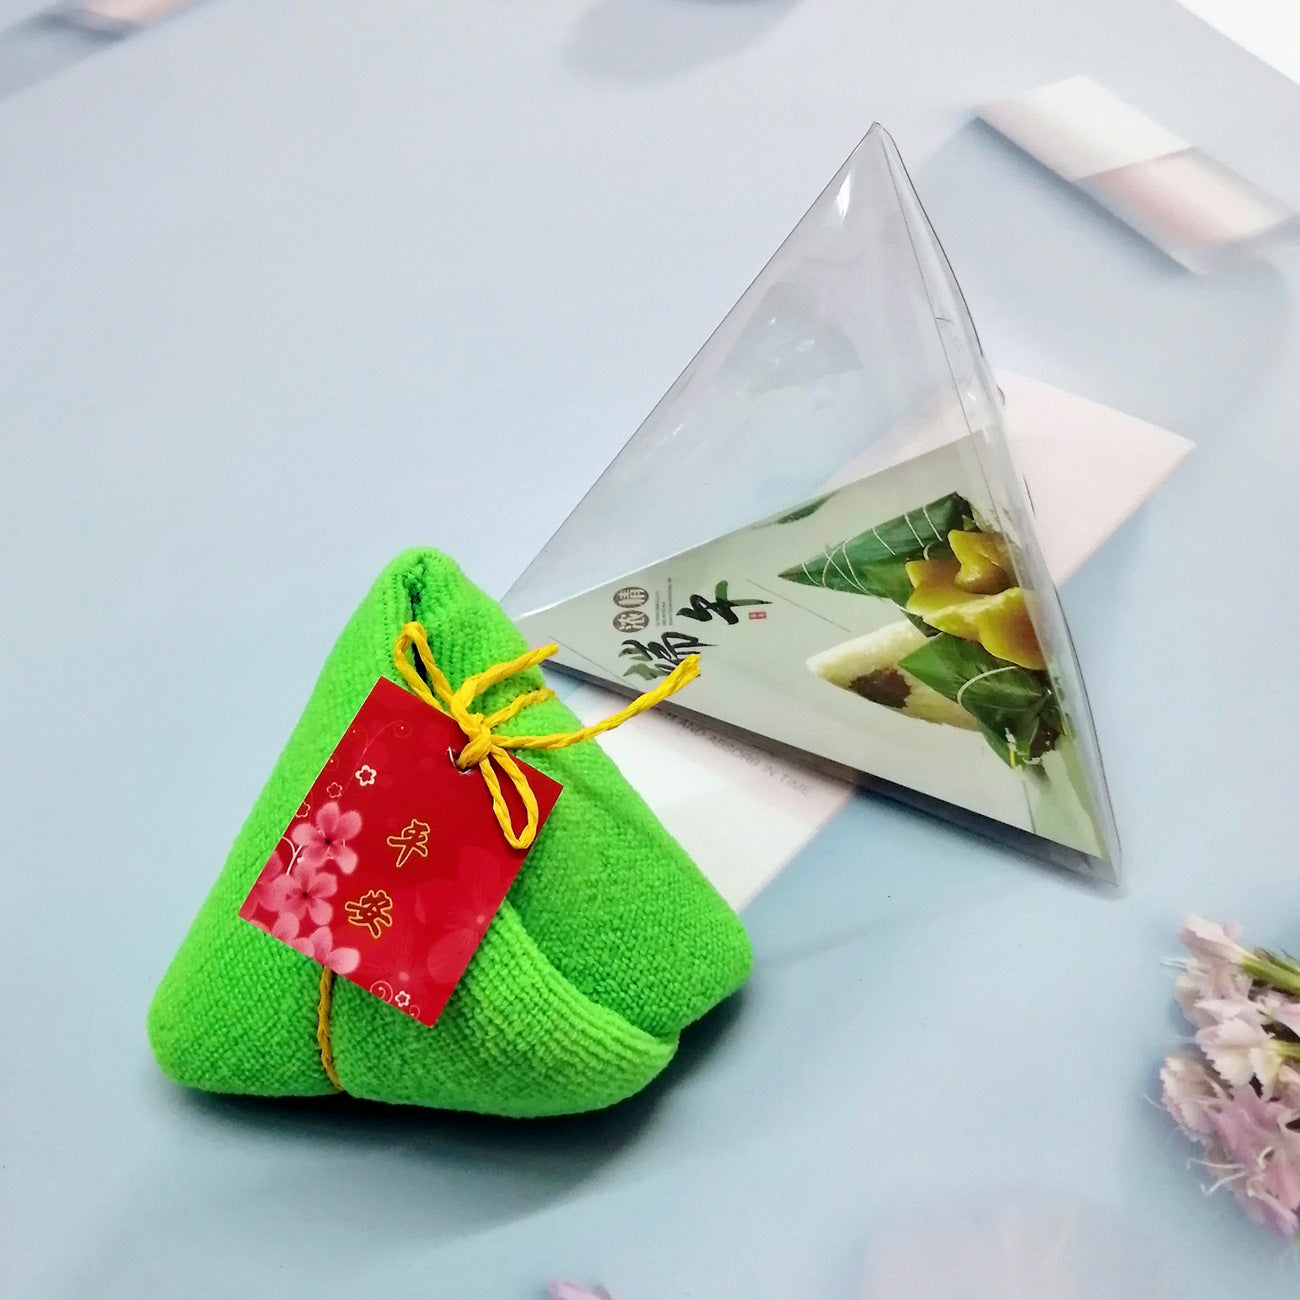 『客製贈品』  創意粽子造型小方巾 |  客製化禮品、禮贈品專家